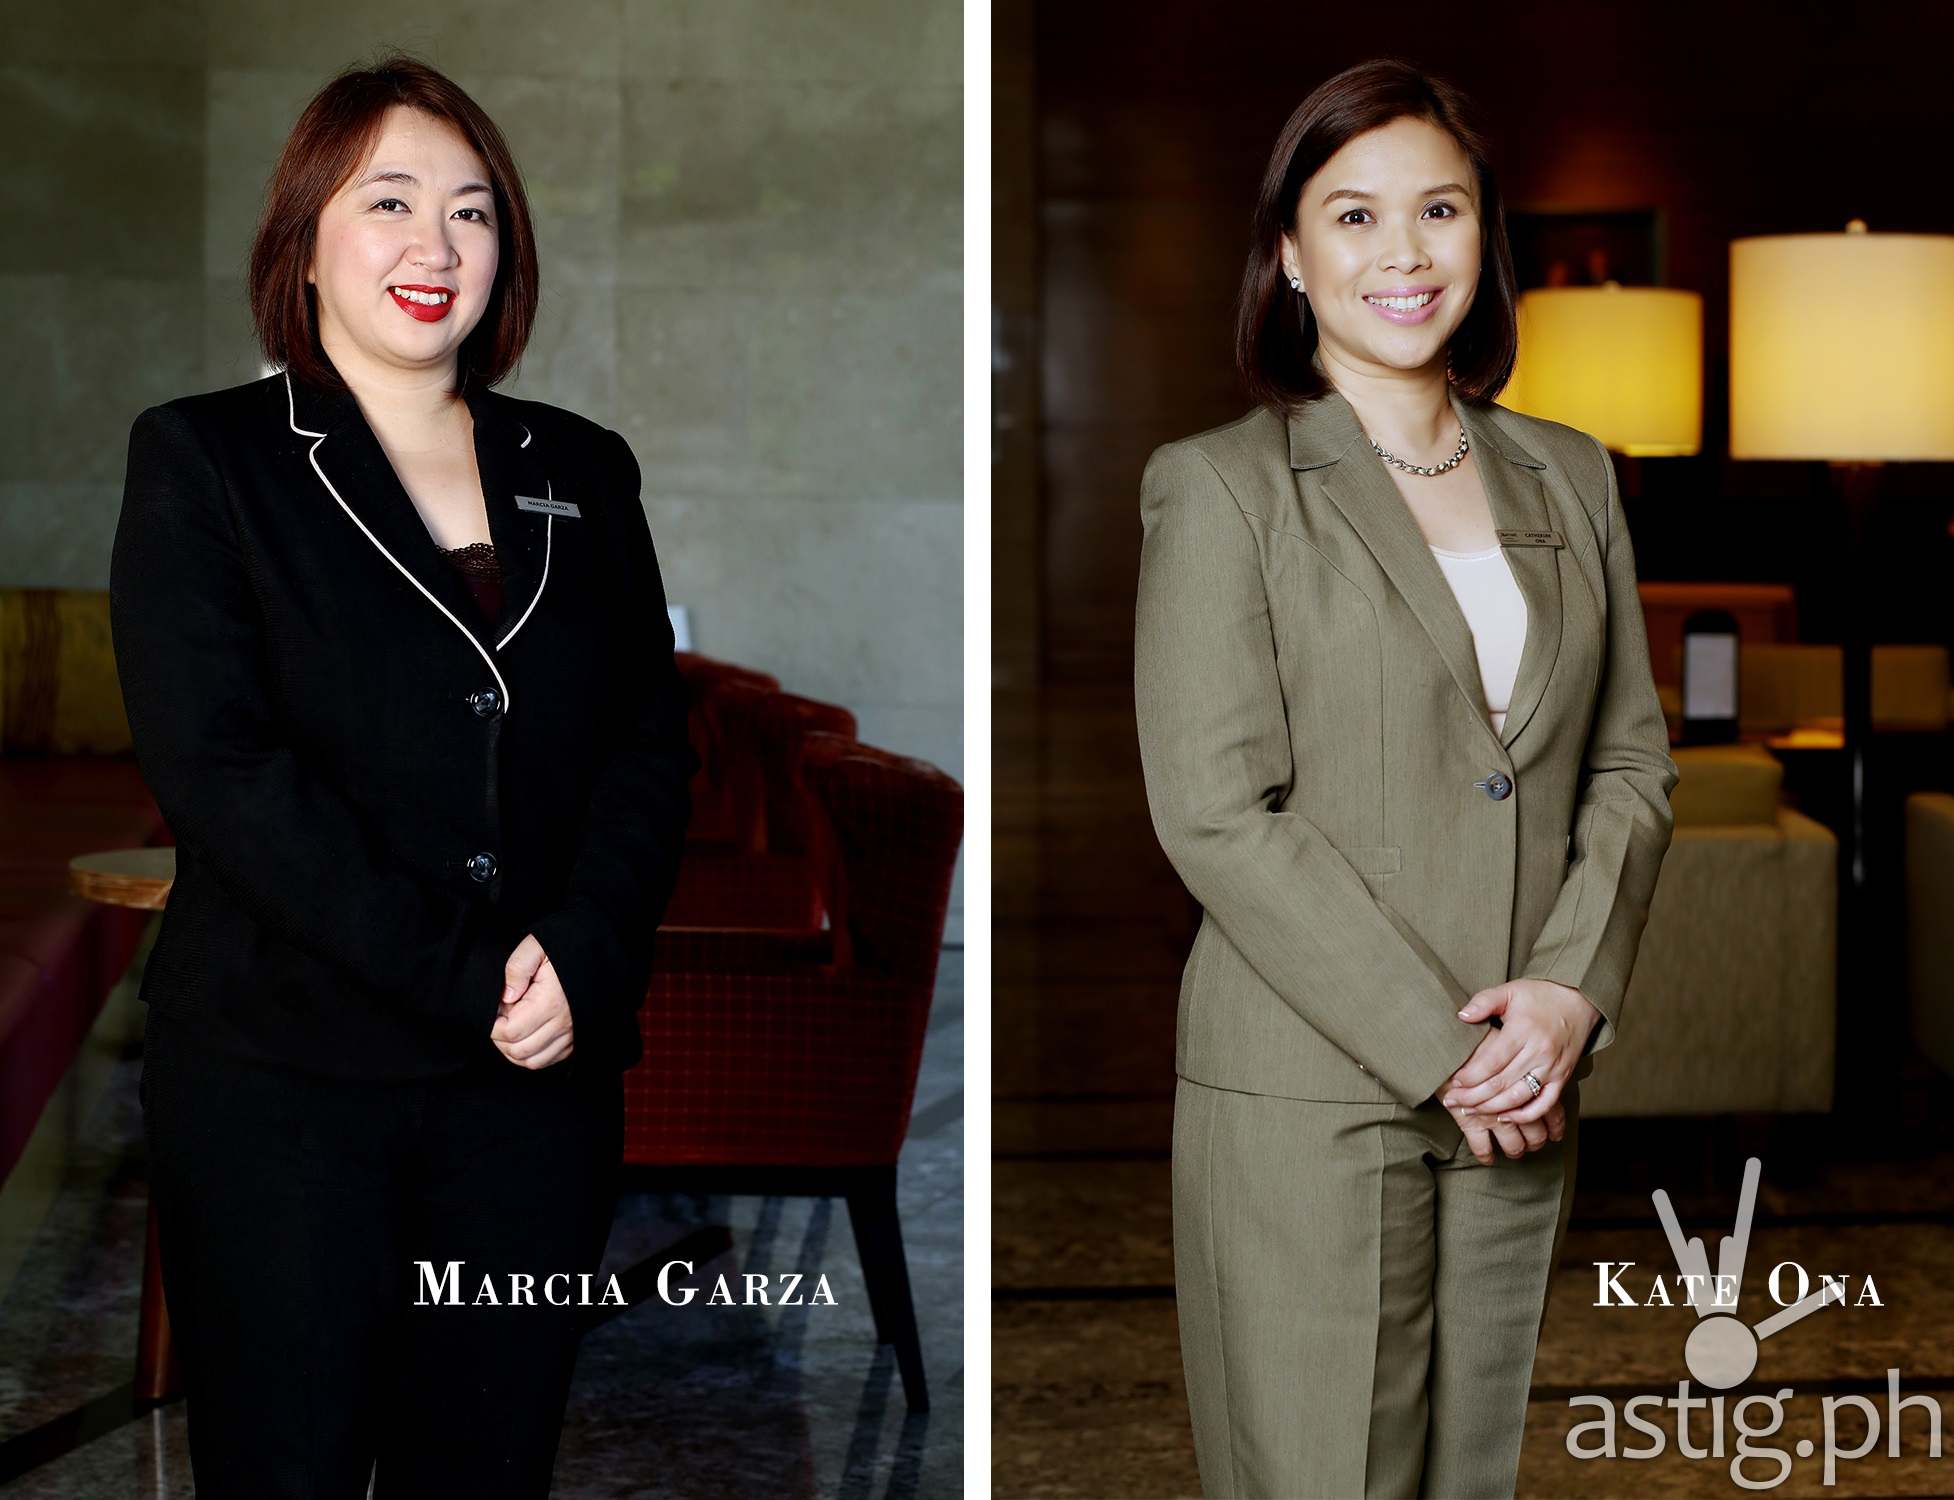 Marriott Hotel Manila's new executives Marcia Garza and Kate Ona